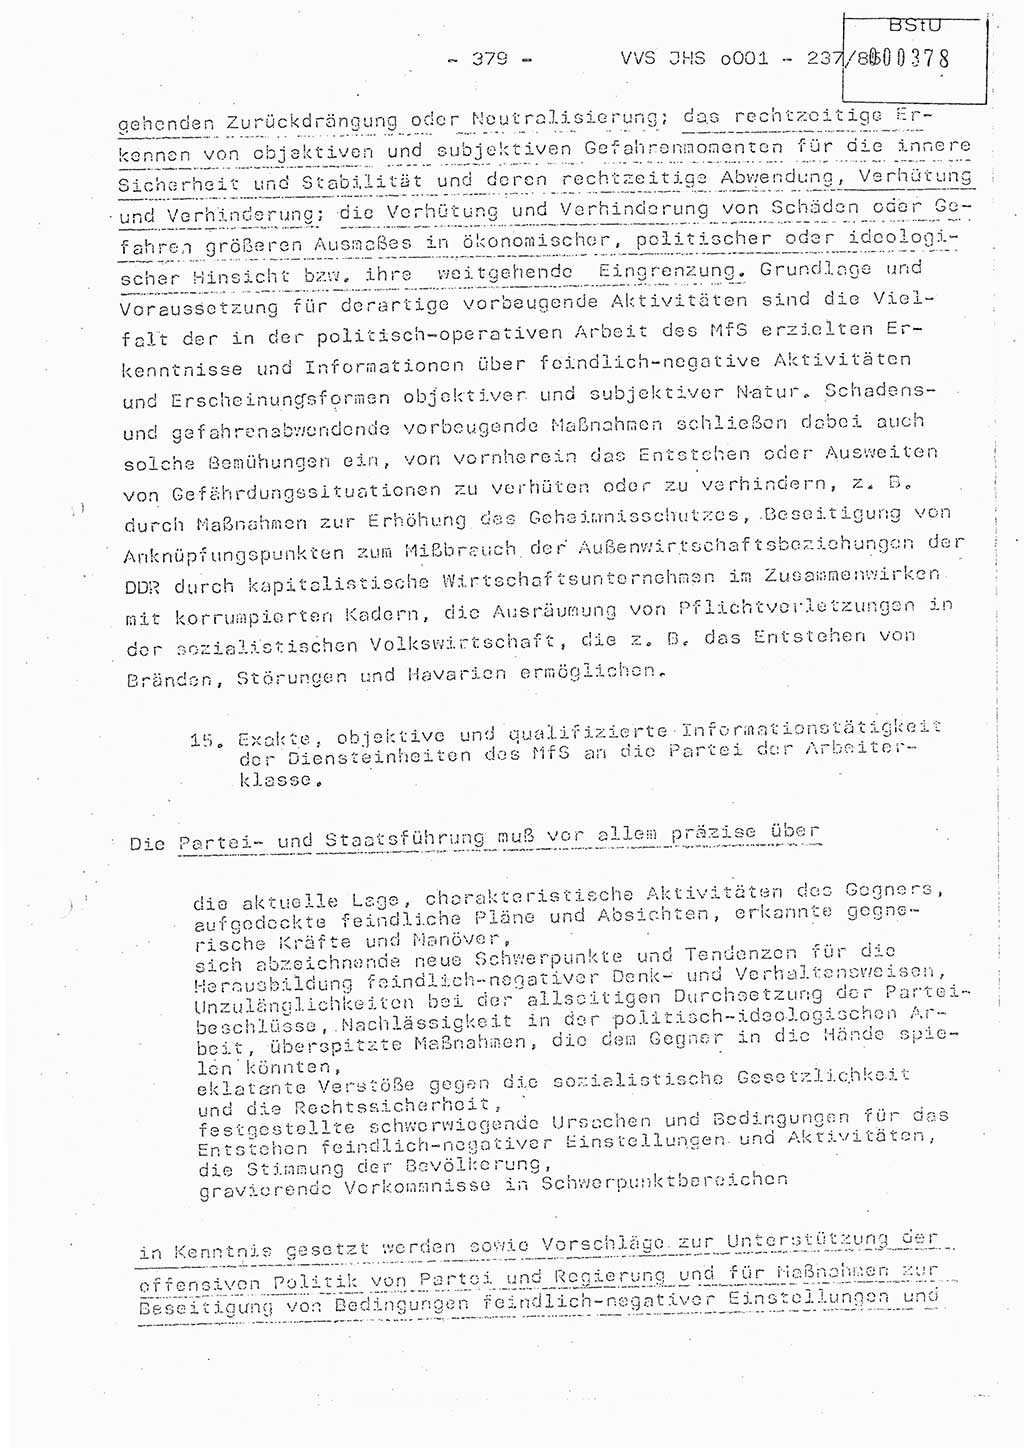 Dissertation Oberstleutnant Peter Jakulski (JHS), Oberstleutnat Christian Rudolph (HA Ⅸ), Major Horst Böttger (ZMD), Major Wolfgang Grüneberg (JHS), Major Albert Meutsch (JHS), Ministerium für Staatssicherheit (MfS) [Deutsche Demokratische Republik (DDR)], Juristische Hochschule (JHS), Vertrauliche Verschlußsache (VVS) o001-237/85, Potsdam 1985, Seite 379 (Diss. MfS DDR JHS VVS o001-237/85 1985, S. 379)